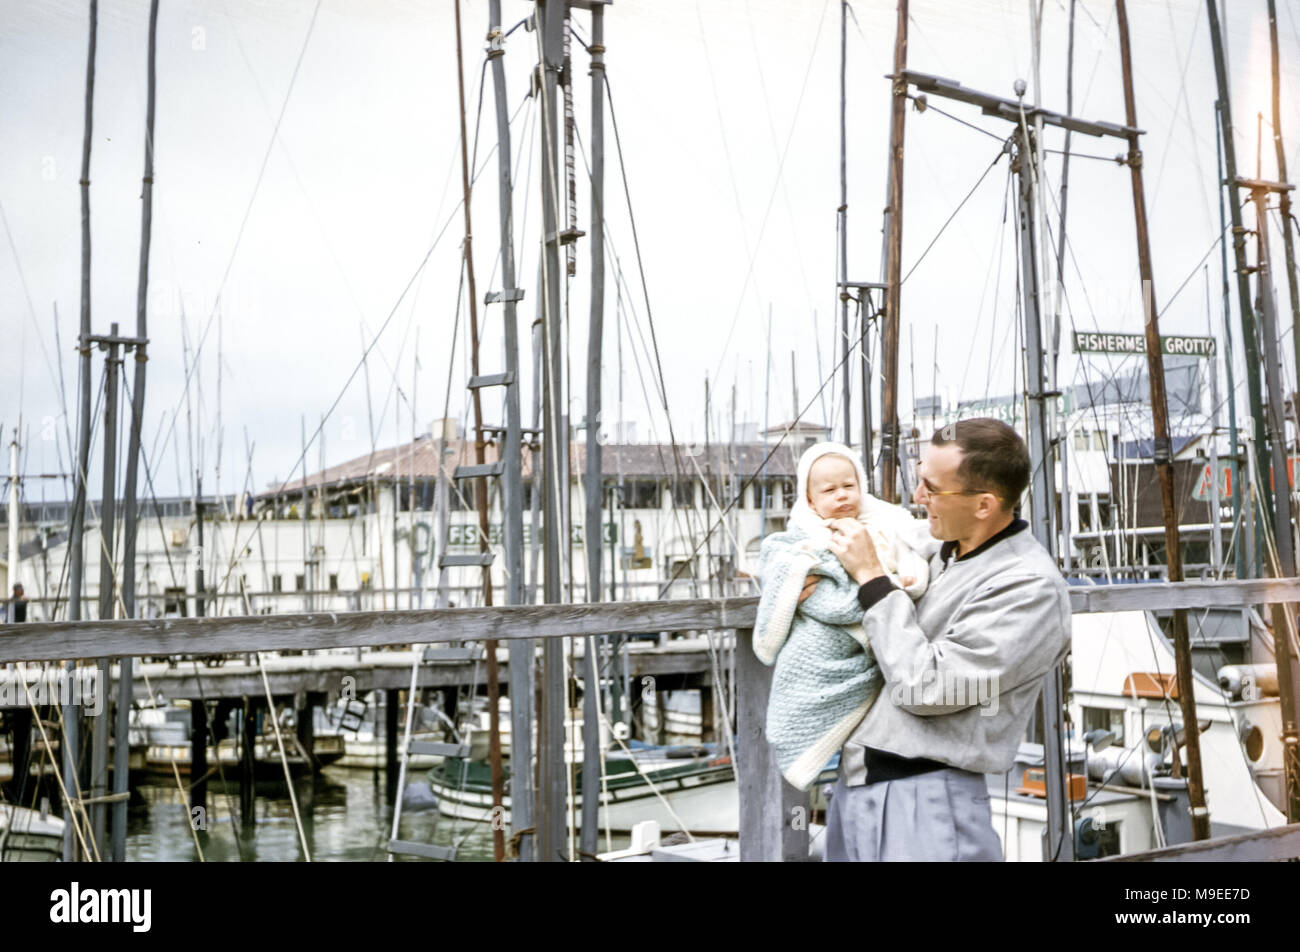 Jeune homme tenant une petite fille de 4 à 5 mois enveloppé dans un châle debout à côté de mâts de bateaux, Fisherman's Wharf, San Francisco Bay, Californie, États-Unis dans les années 1950 Banque D'Images